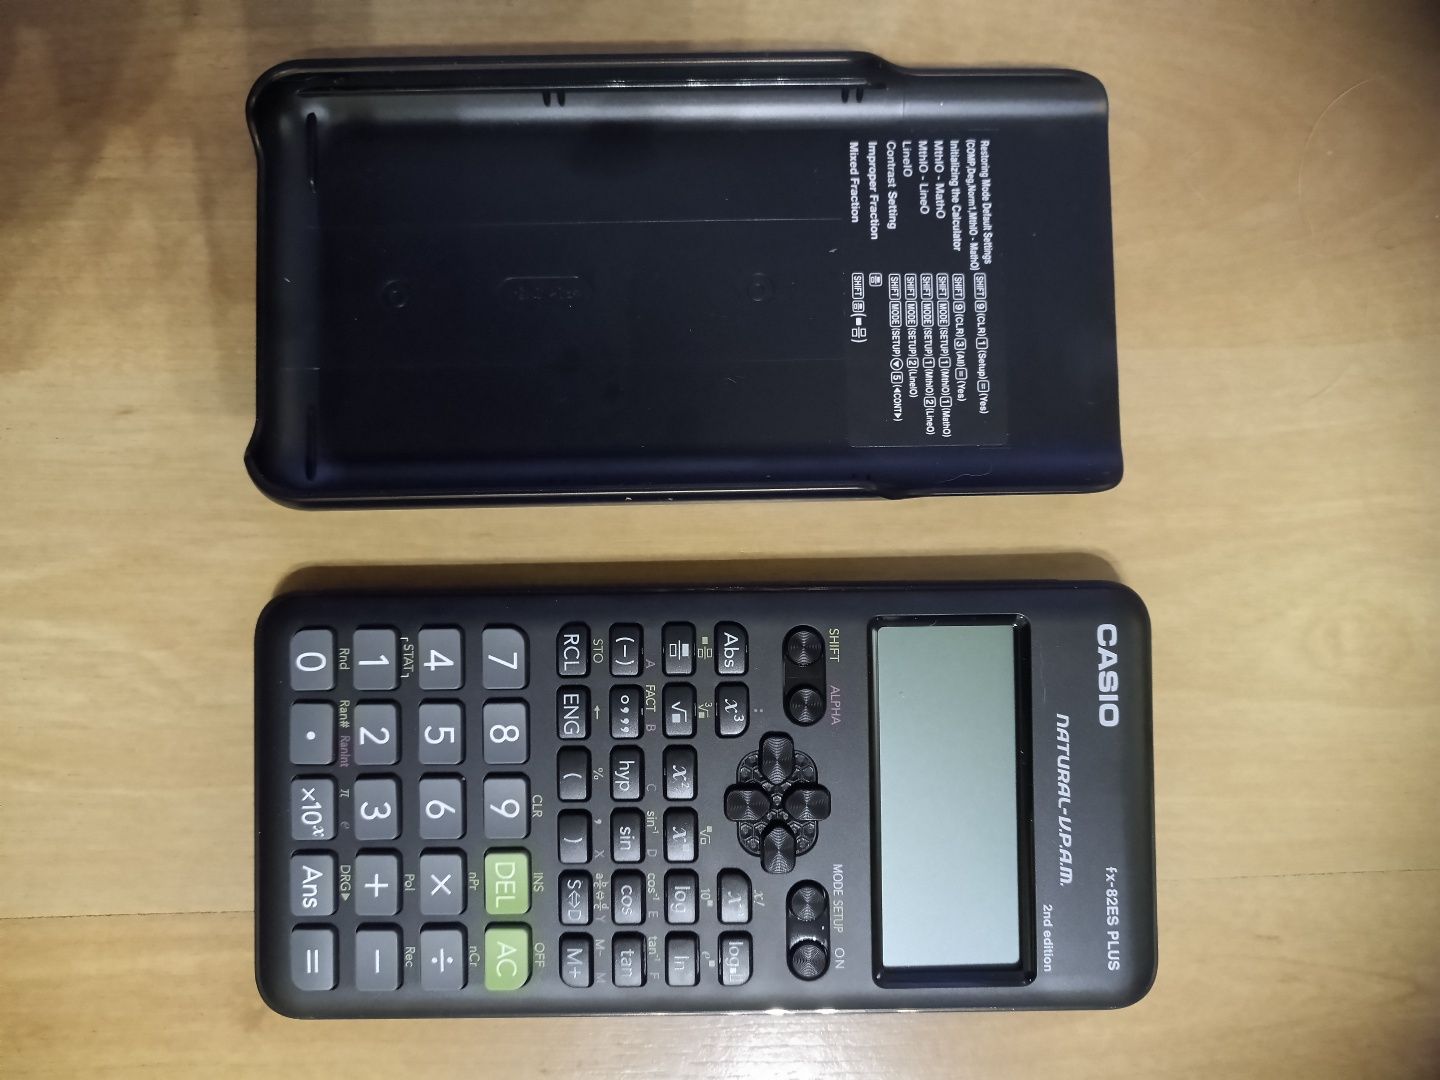 Kalkulator naukowy Casio fx-82es PLUS 2nd edition